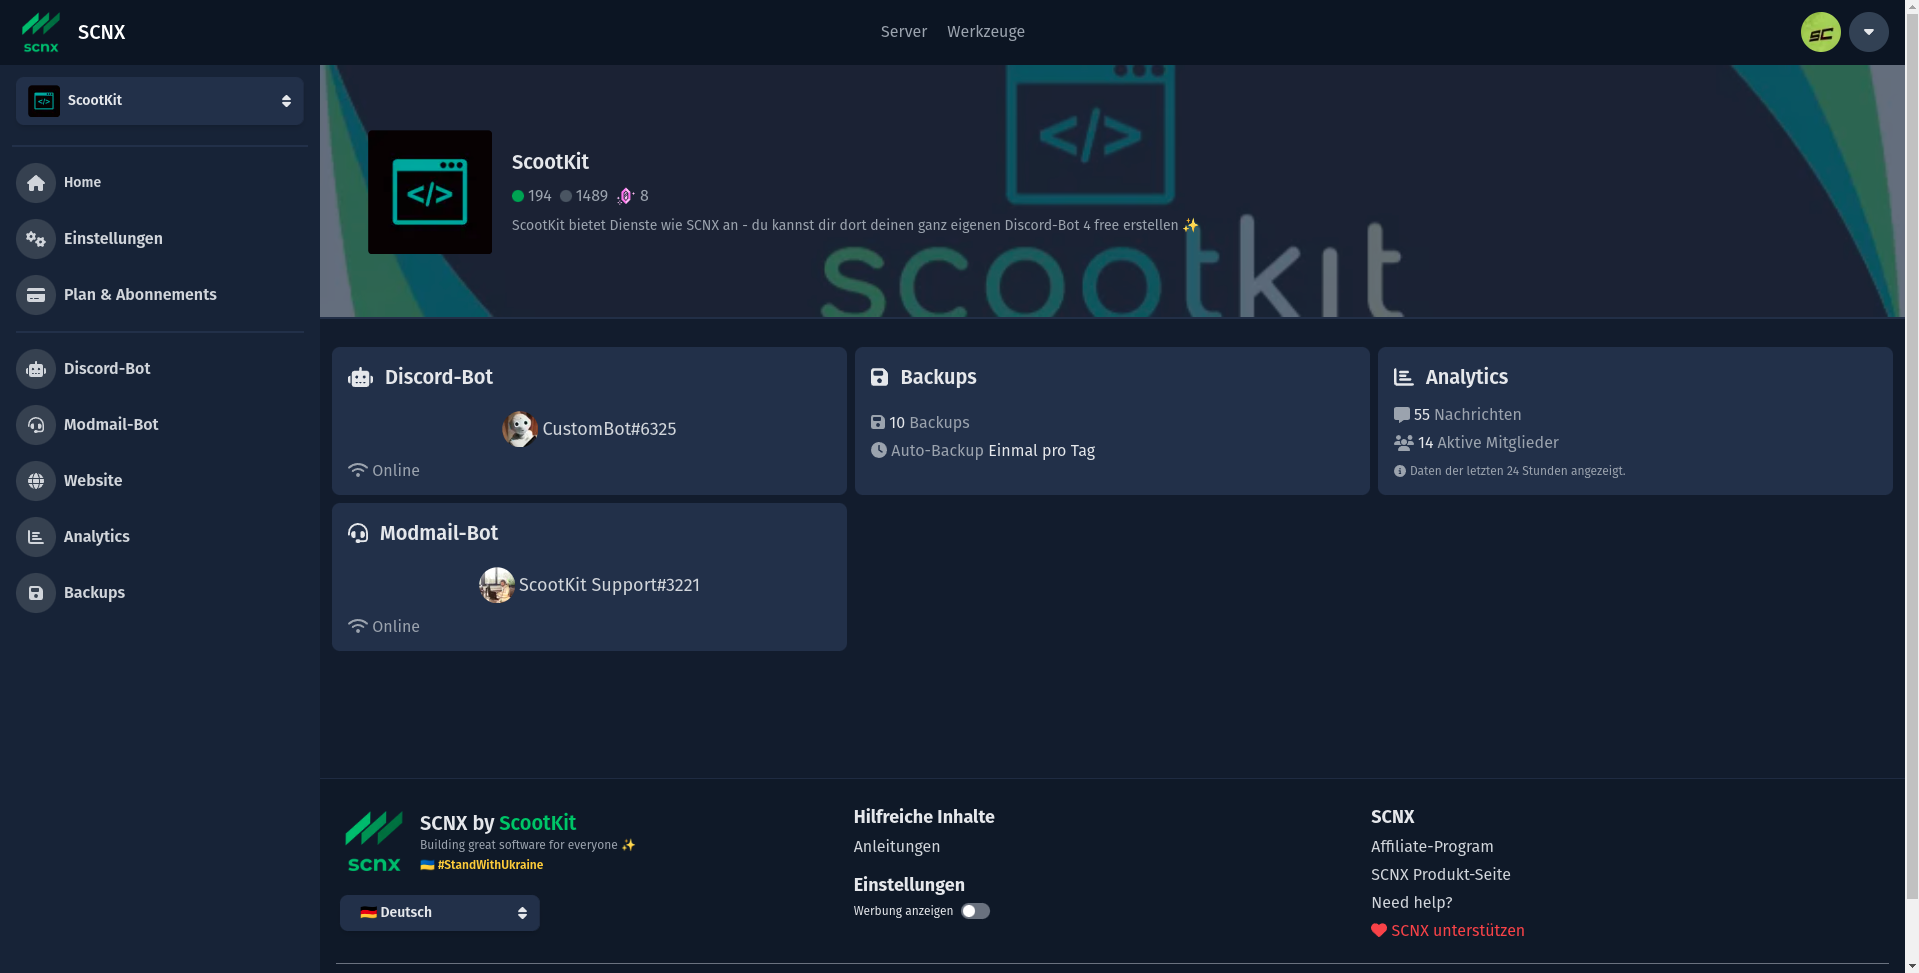 Bildschirmfoto des SCNX Dashboards